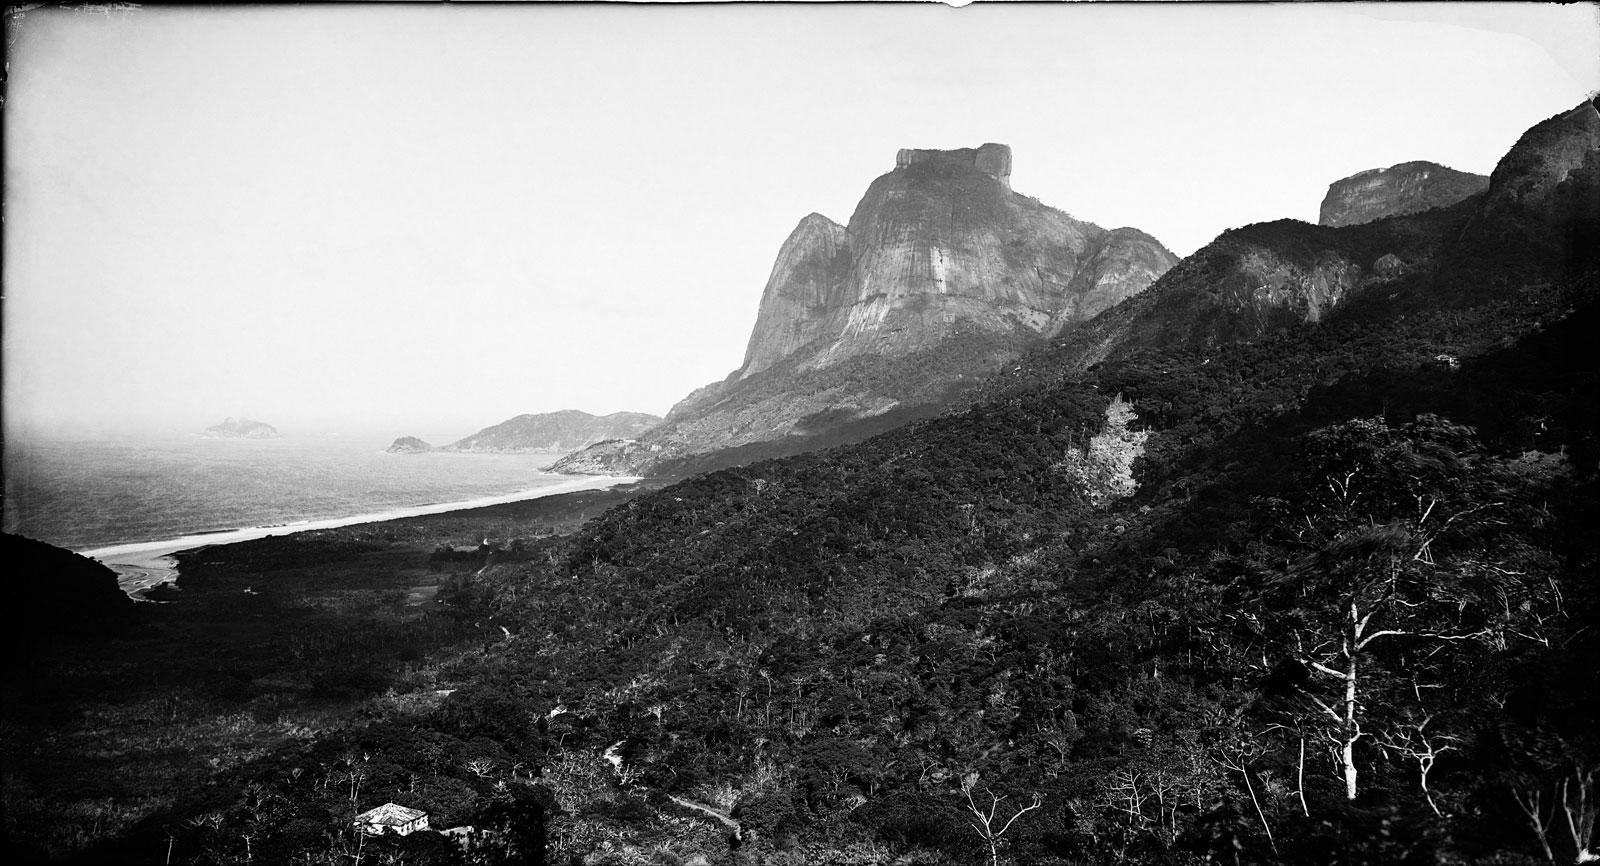 Pedra de Gávea Mountain and São Conrado Beach, circa 1890